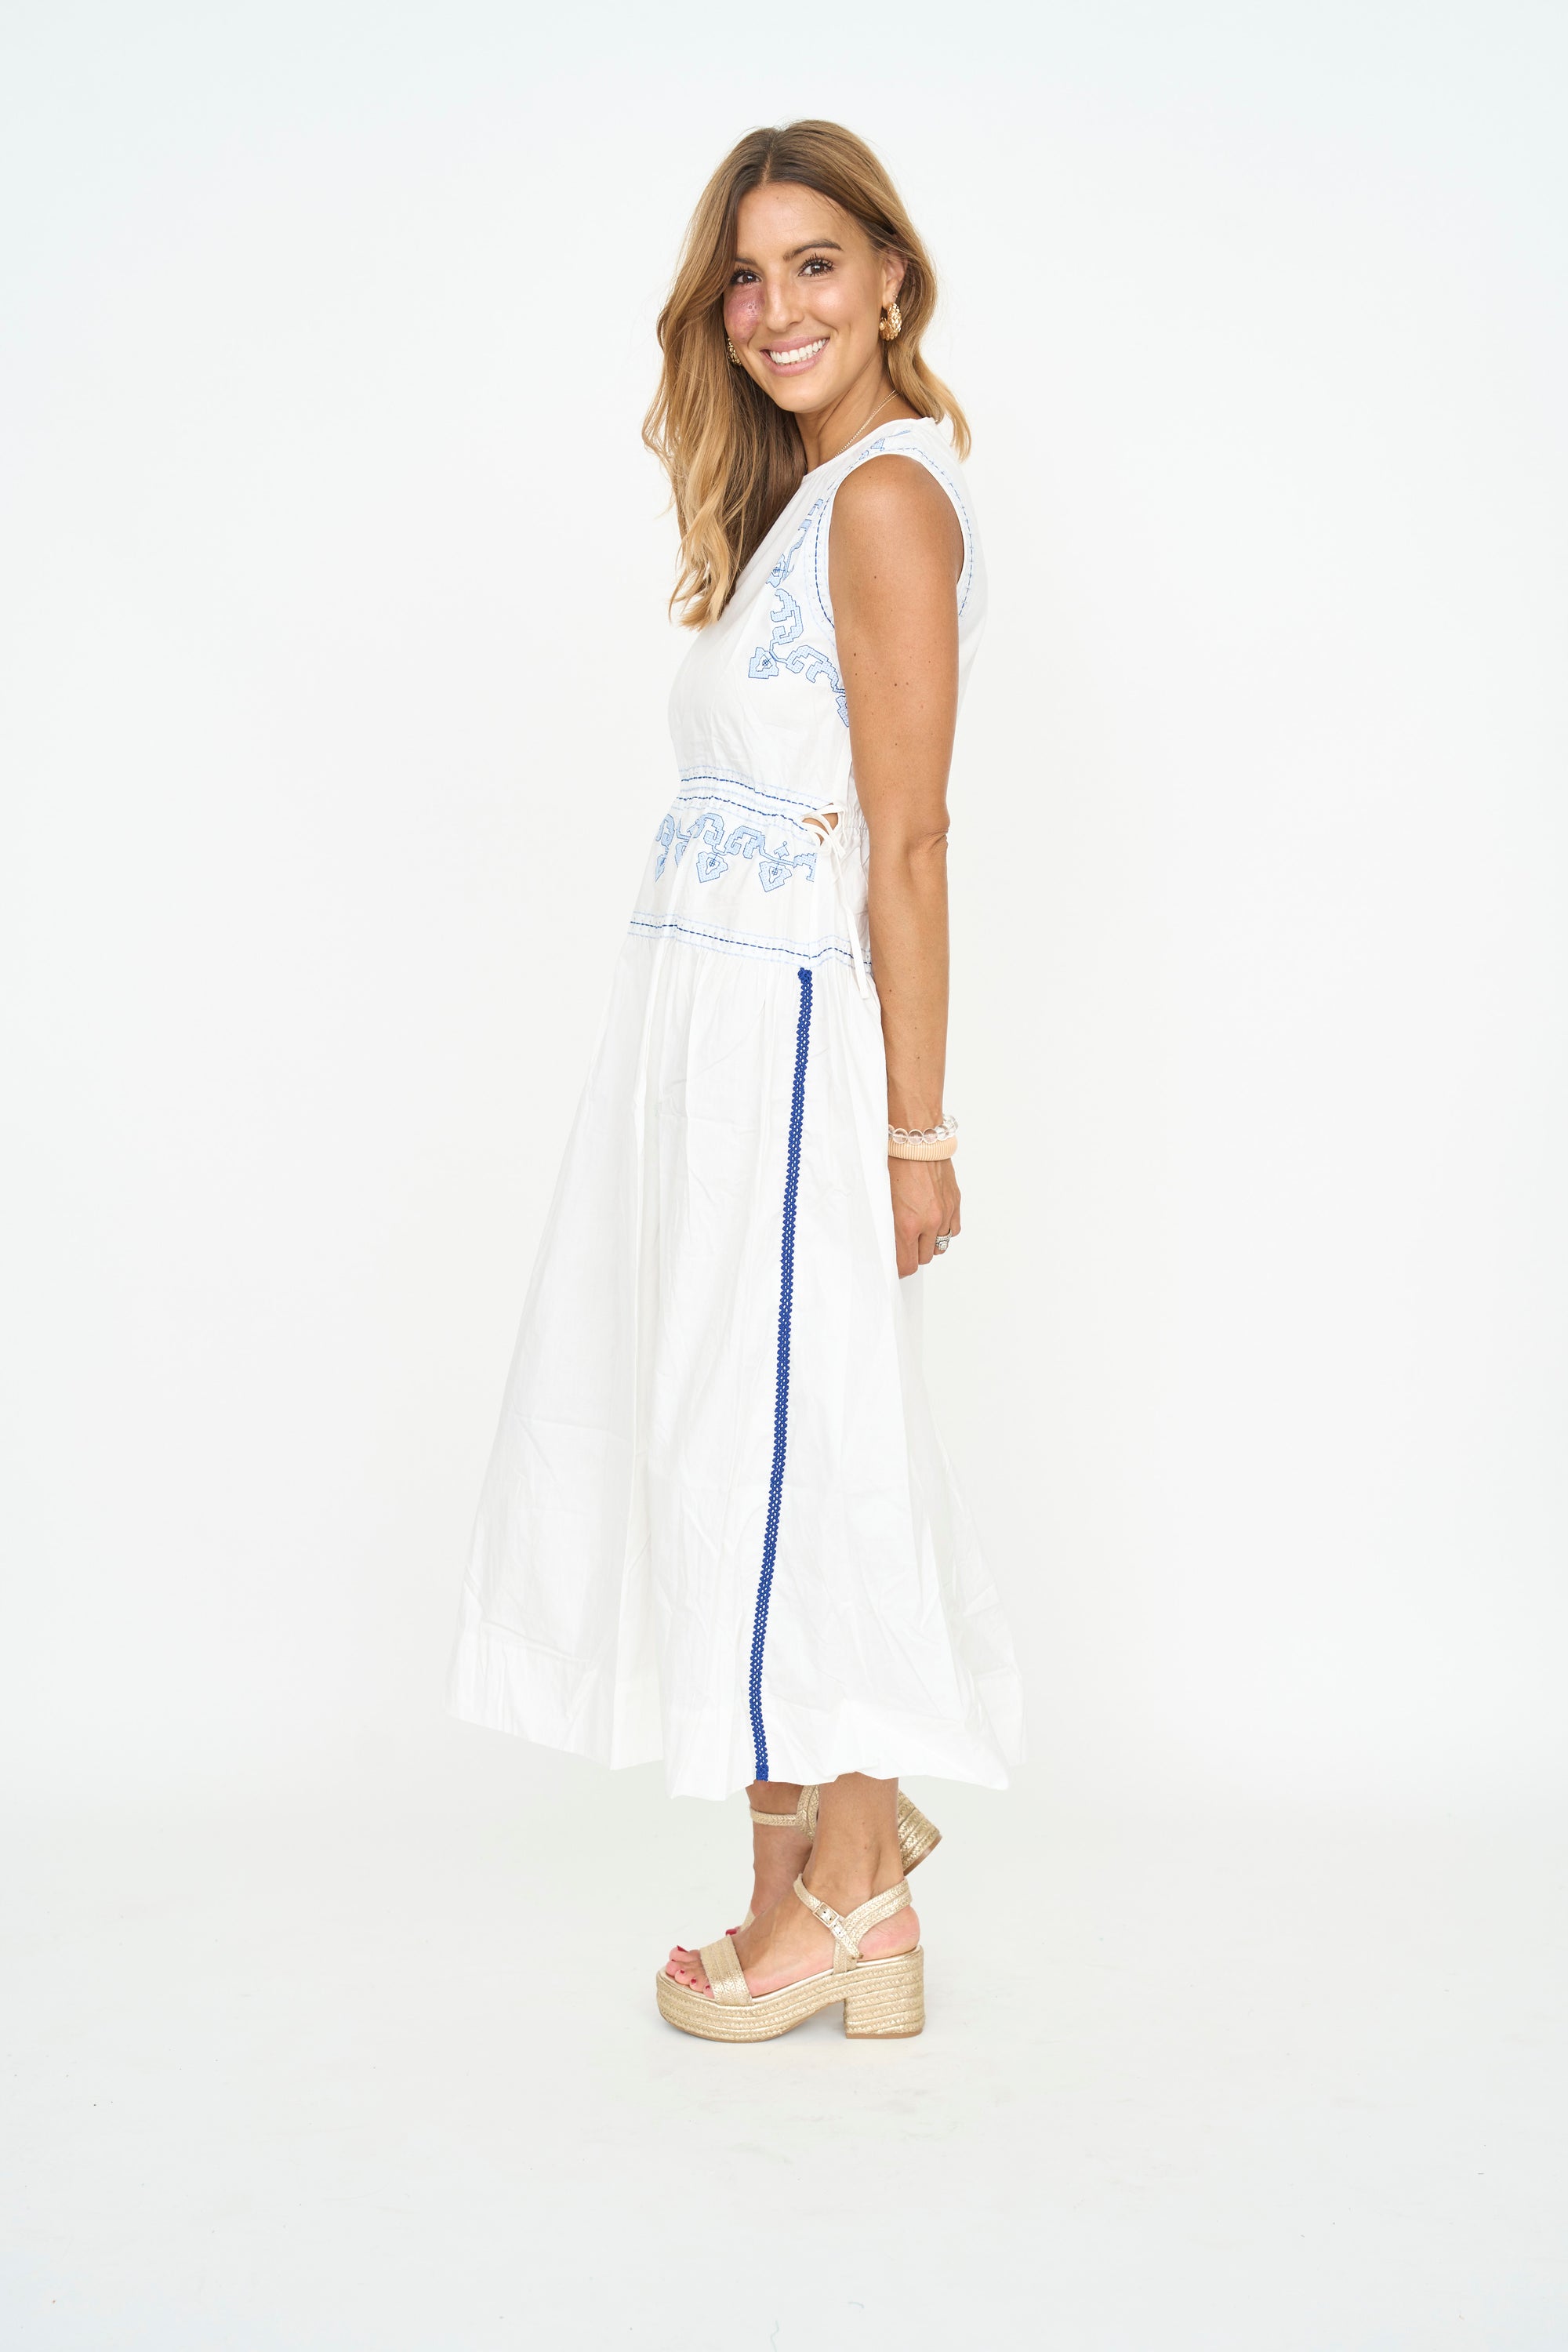 Summer White Midi Dress